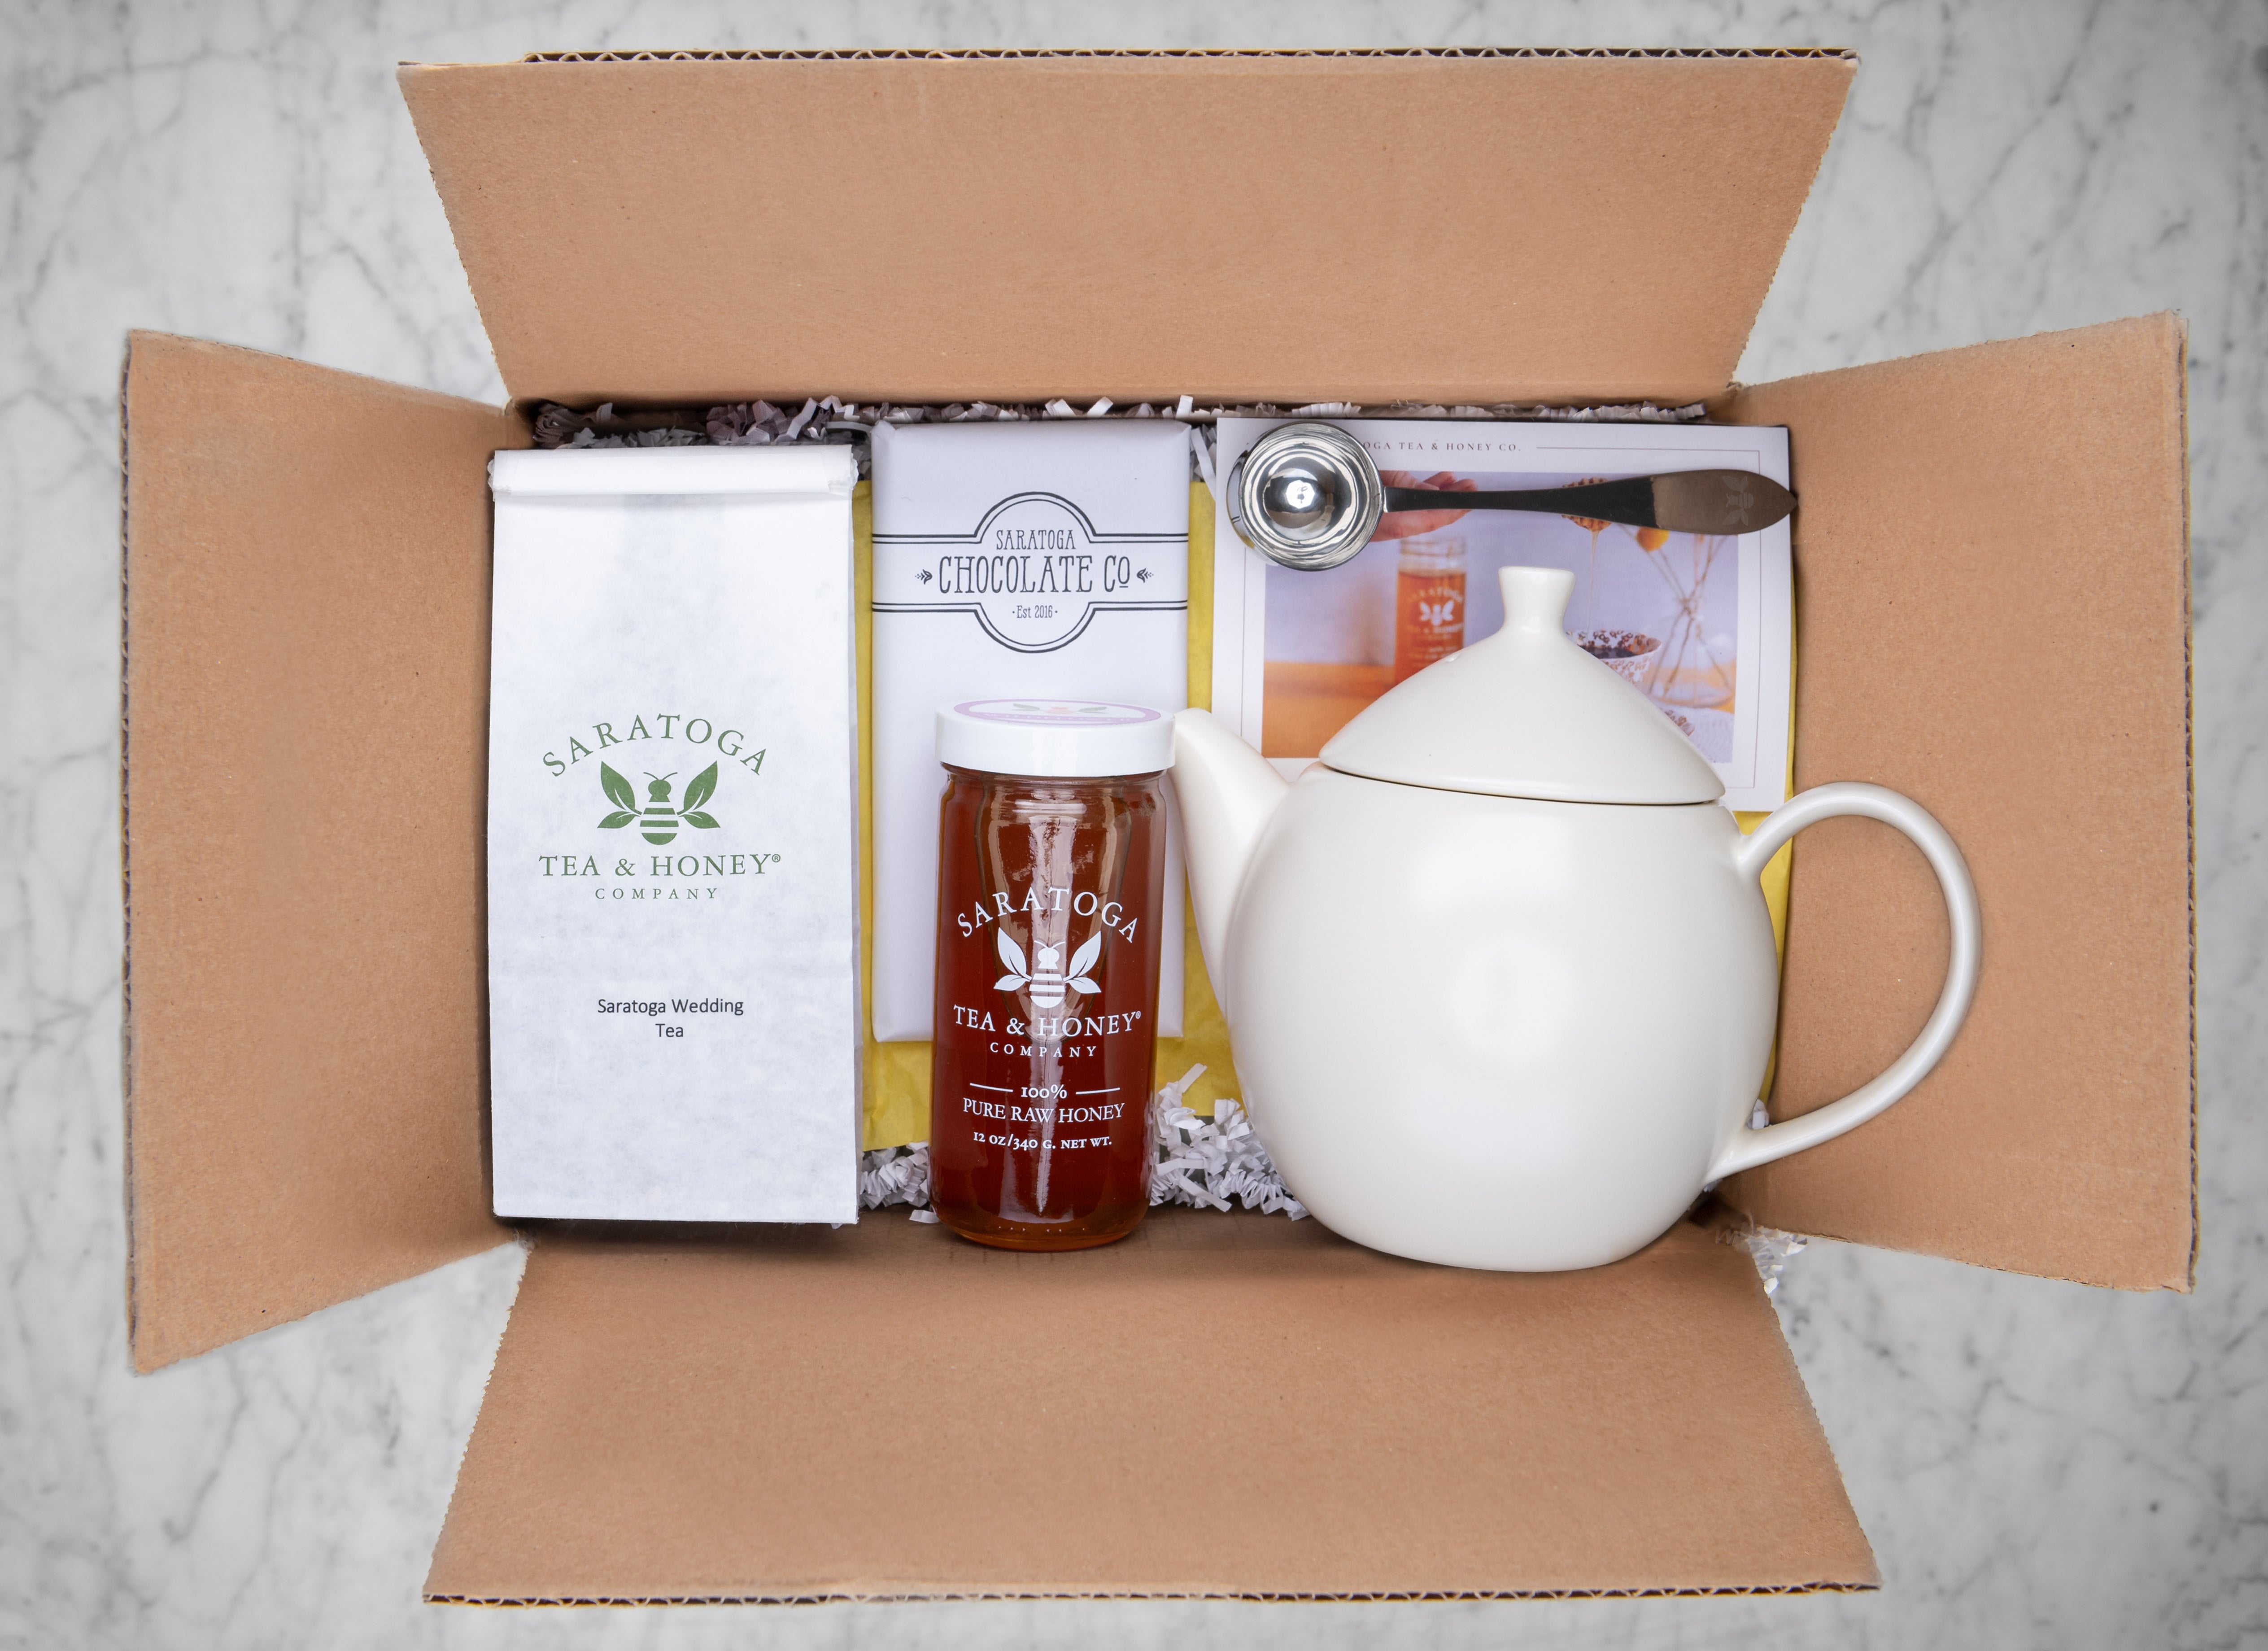 tea gift set for couples with large tea pot, loose tea, tea scoop, jar of honey and a chocolate bar feat Saratoga Wedding Tea